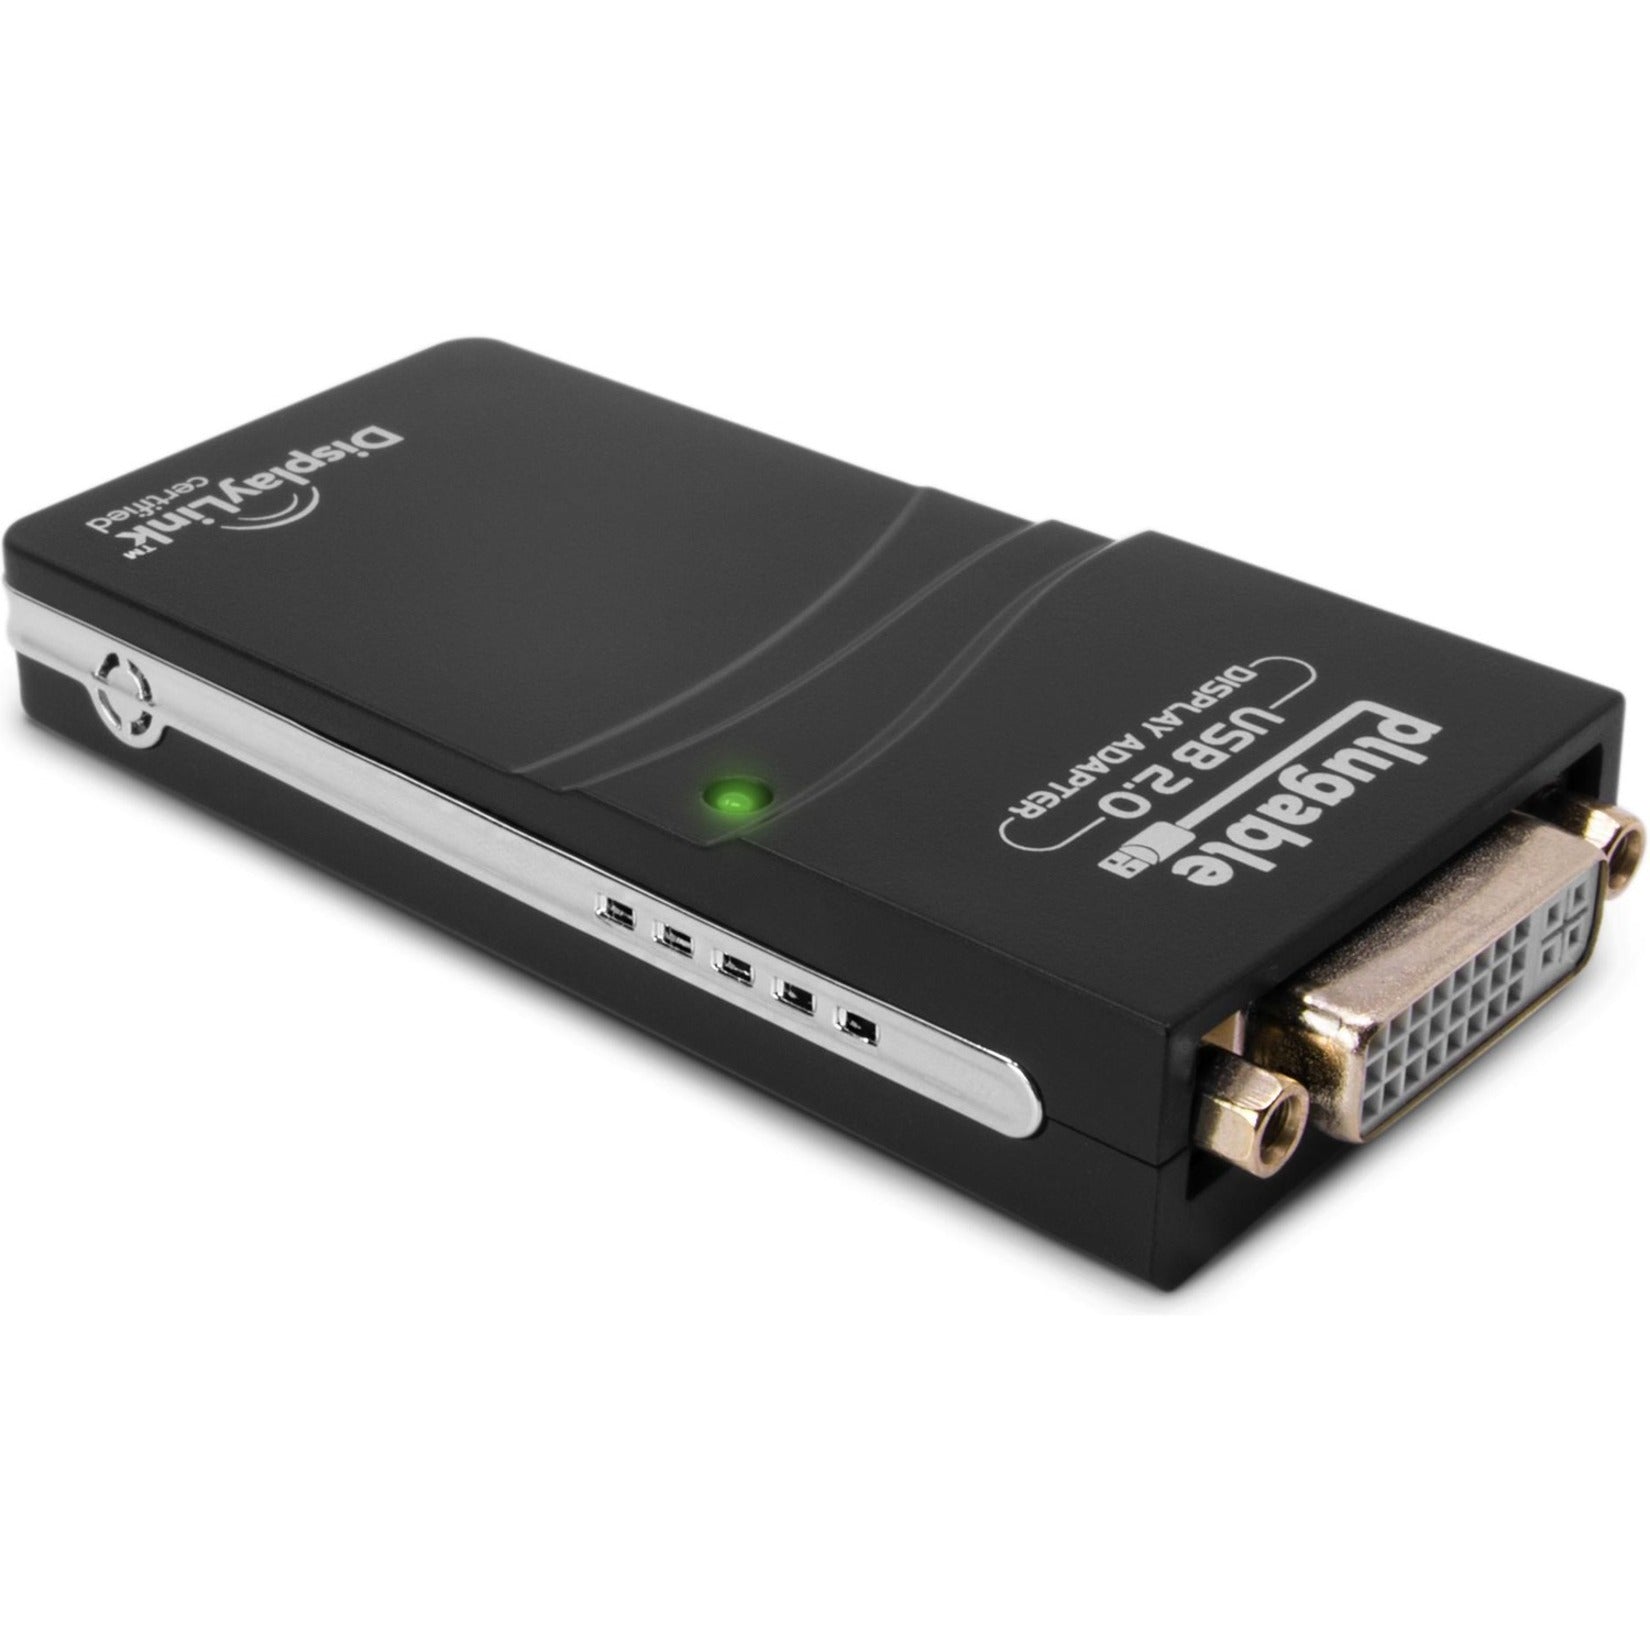 Plugable UGA-165 USB 2.0 إلى محول فيديو جرافيك DVI/VGA/HDMI للعديد من الشاشات، قابل للتوصيل والتشغيل